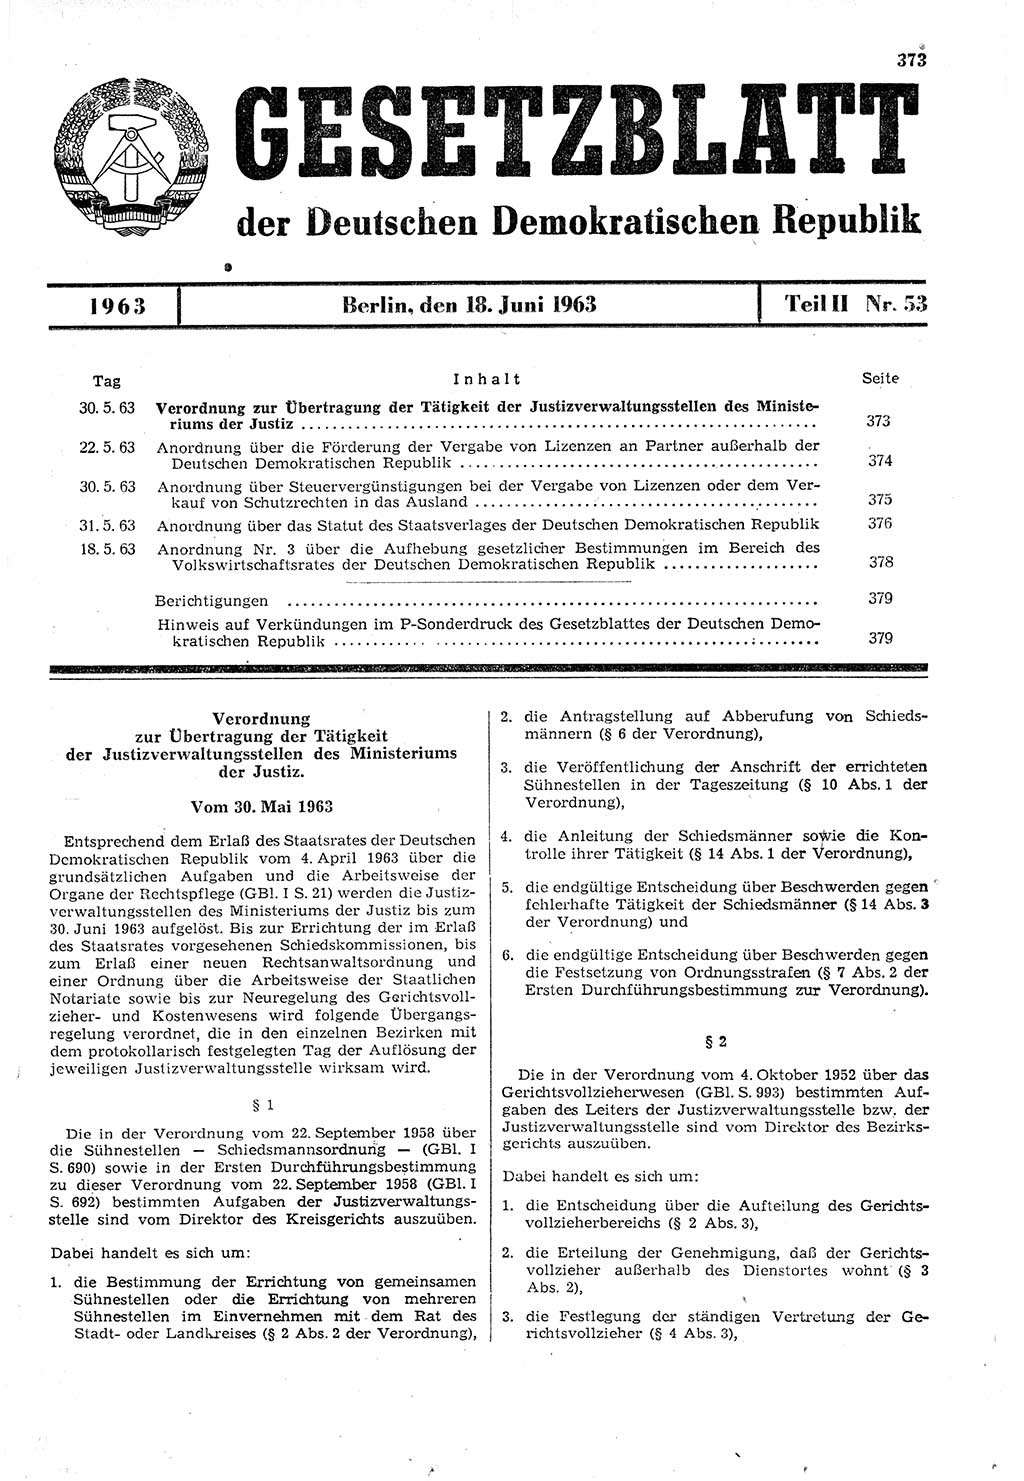 Gesetzblatt (GBl.) der Deutschen Demokratischen Republik (DDR) Teil ⅠⅠ 1963, Seite 373 (GBl. DDR ⅠⅠ 1963, S. 373)